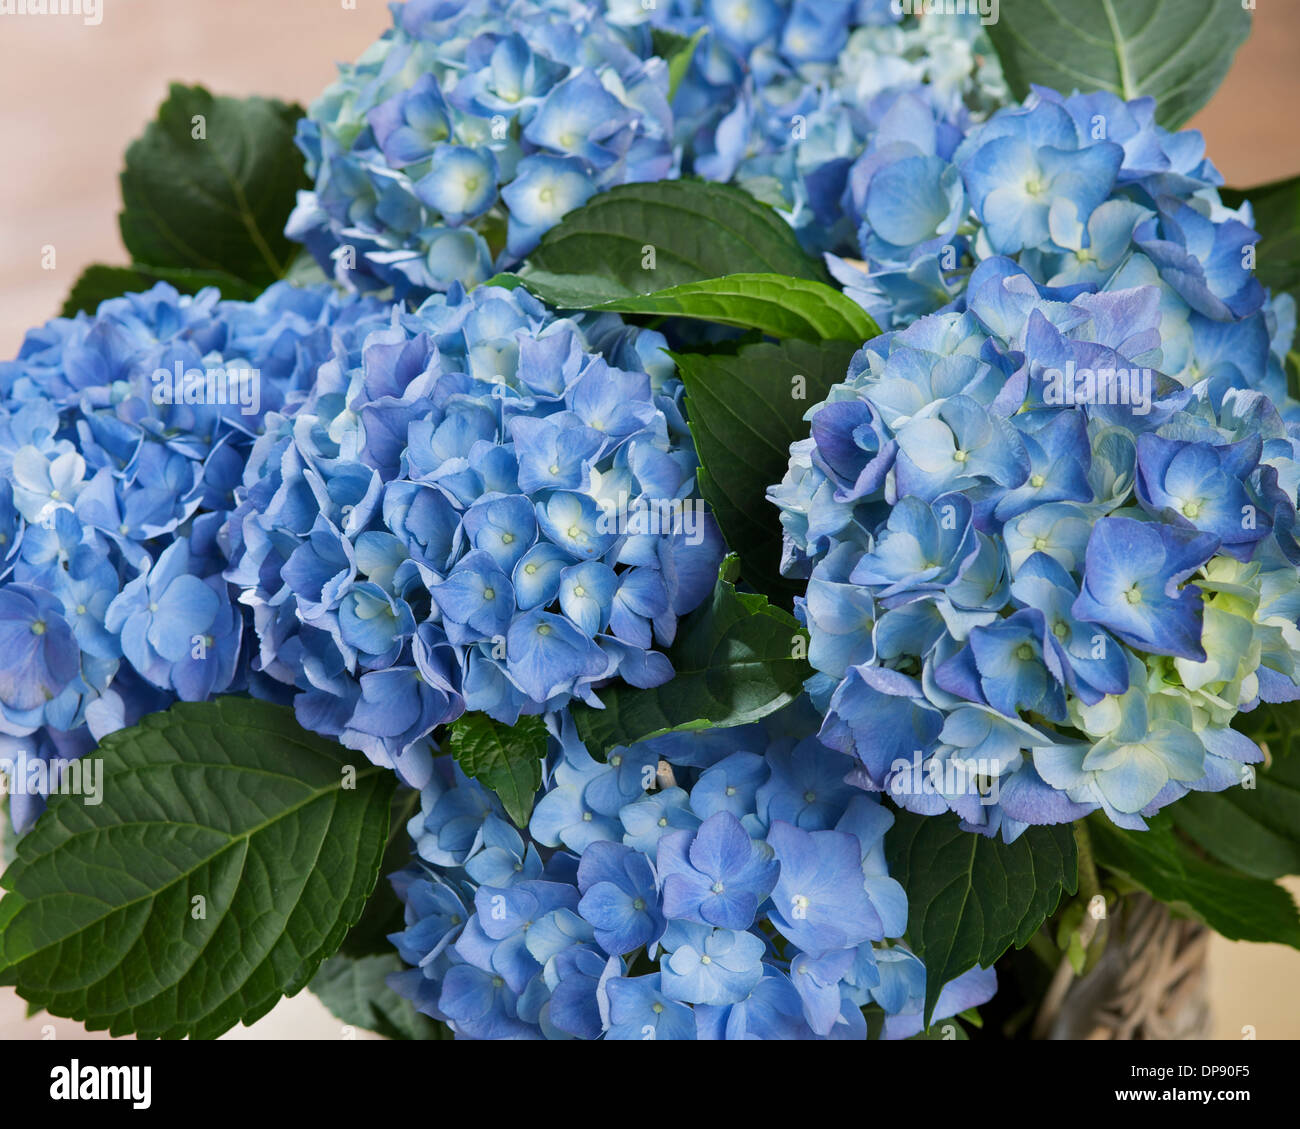 Hydrangea ou Hortensia plante à feuilles caduques bleues Banque D'Images